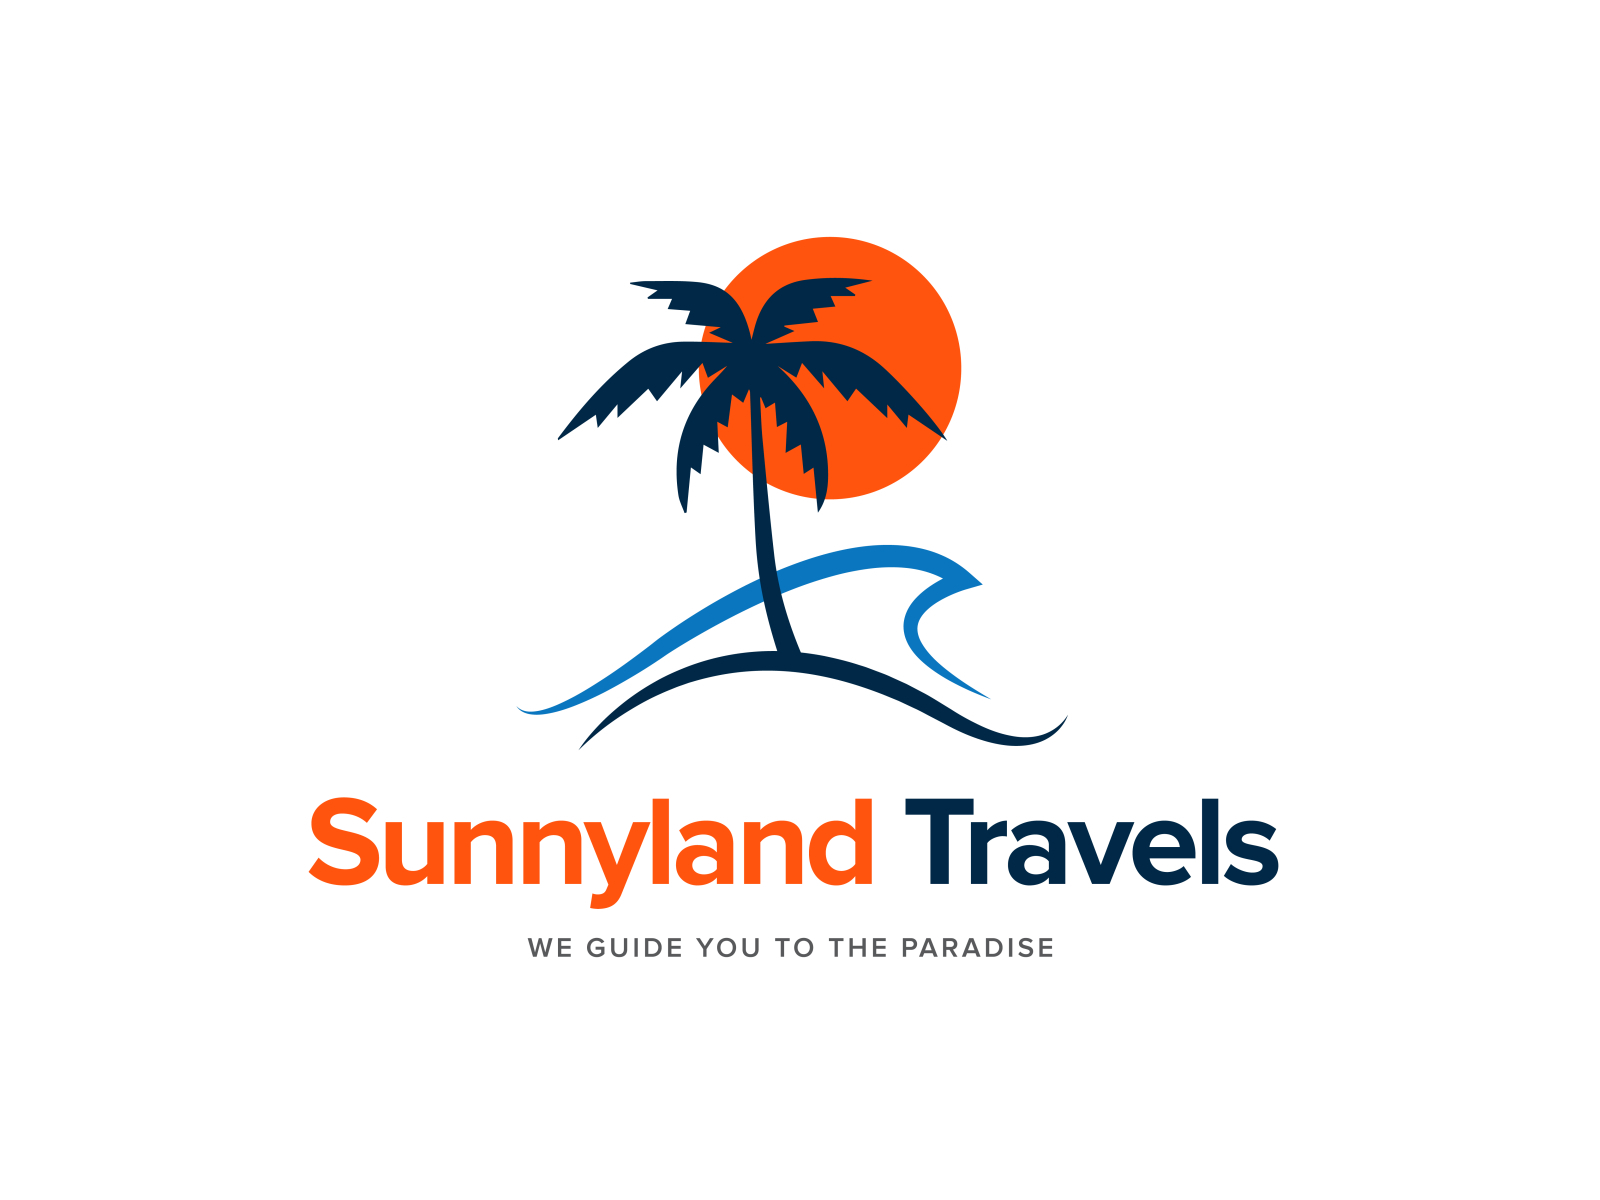 sunnyland travel agency